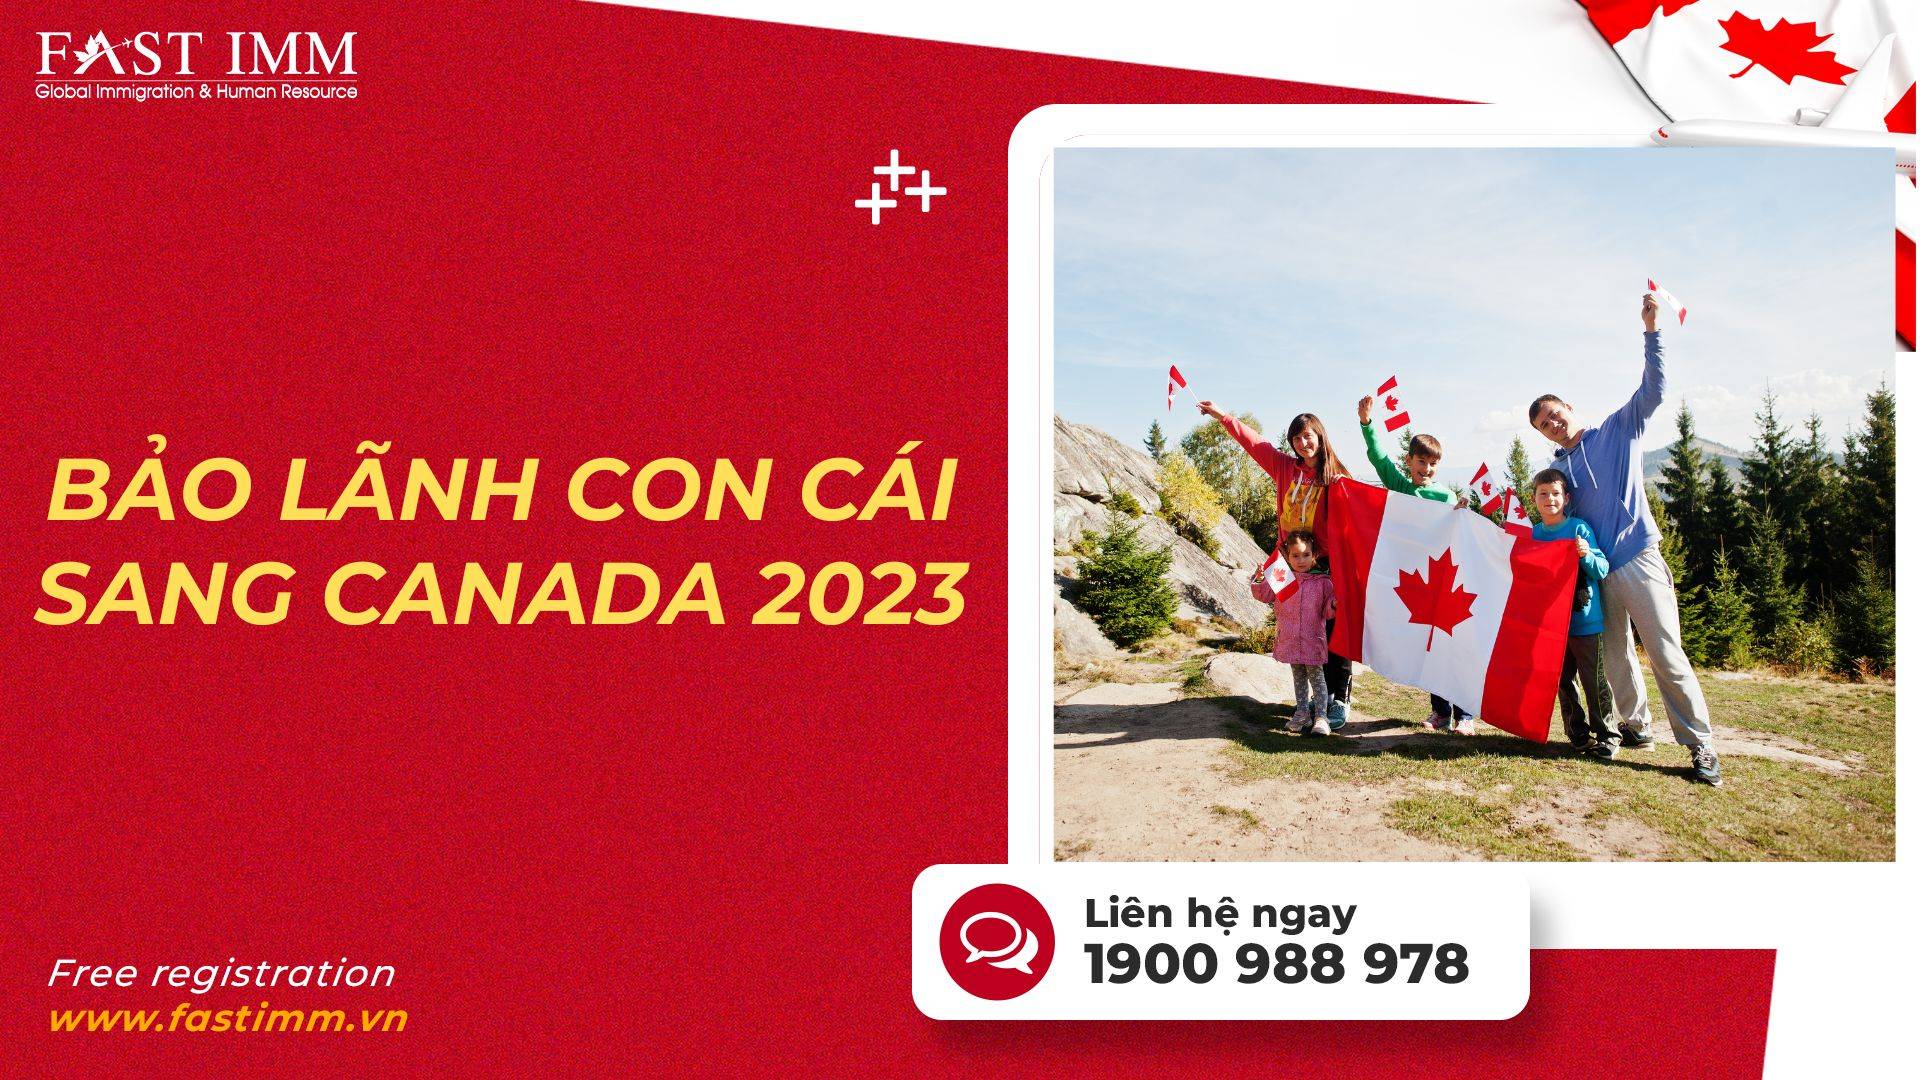 Bảo lãnh con cái sang Canada 2023 